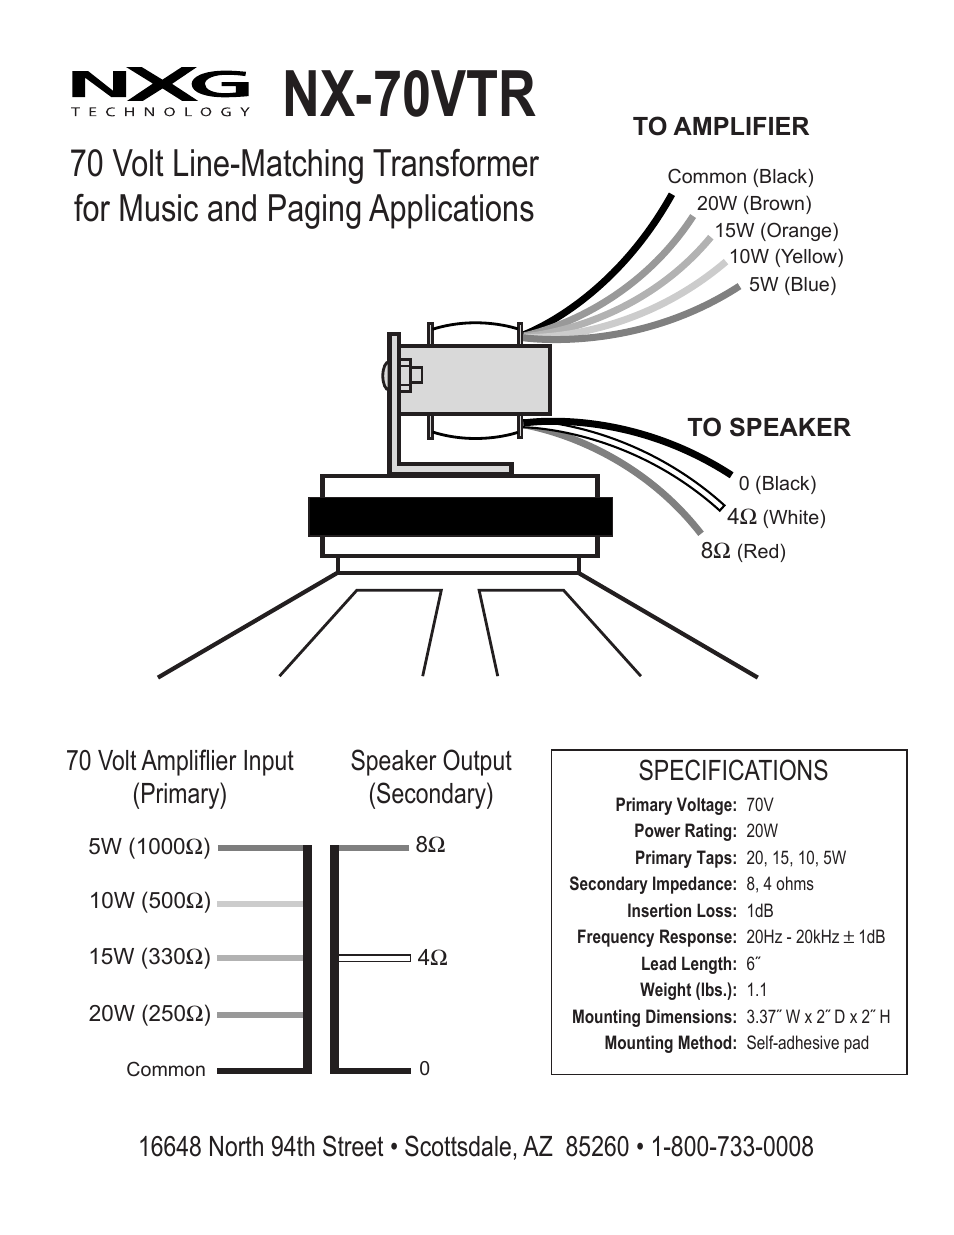 NX-70VTR - 70-volt transformer